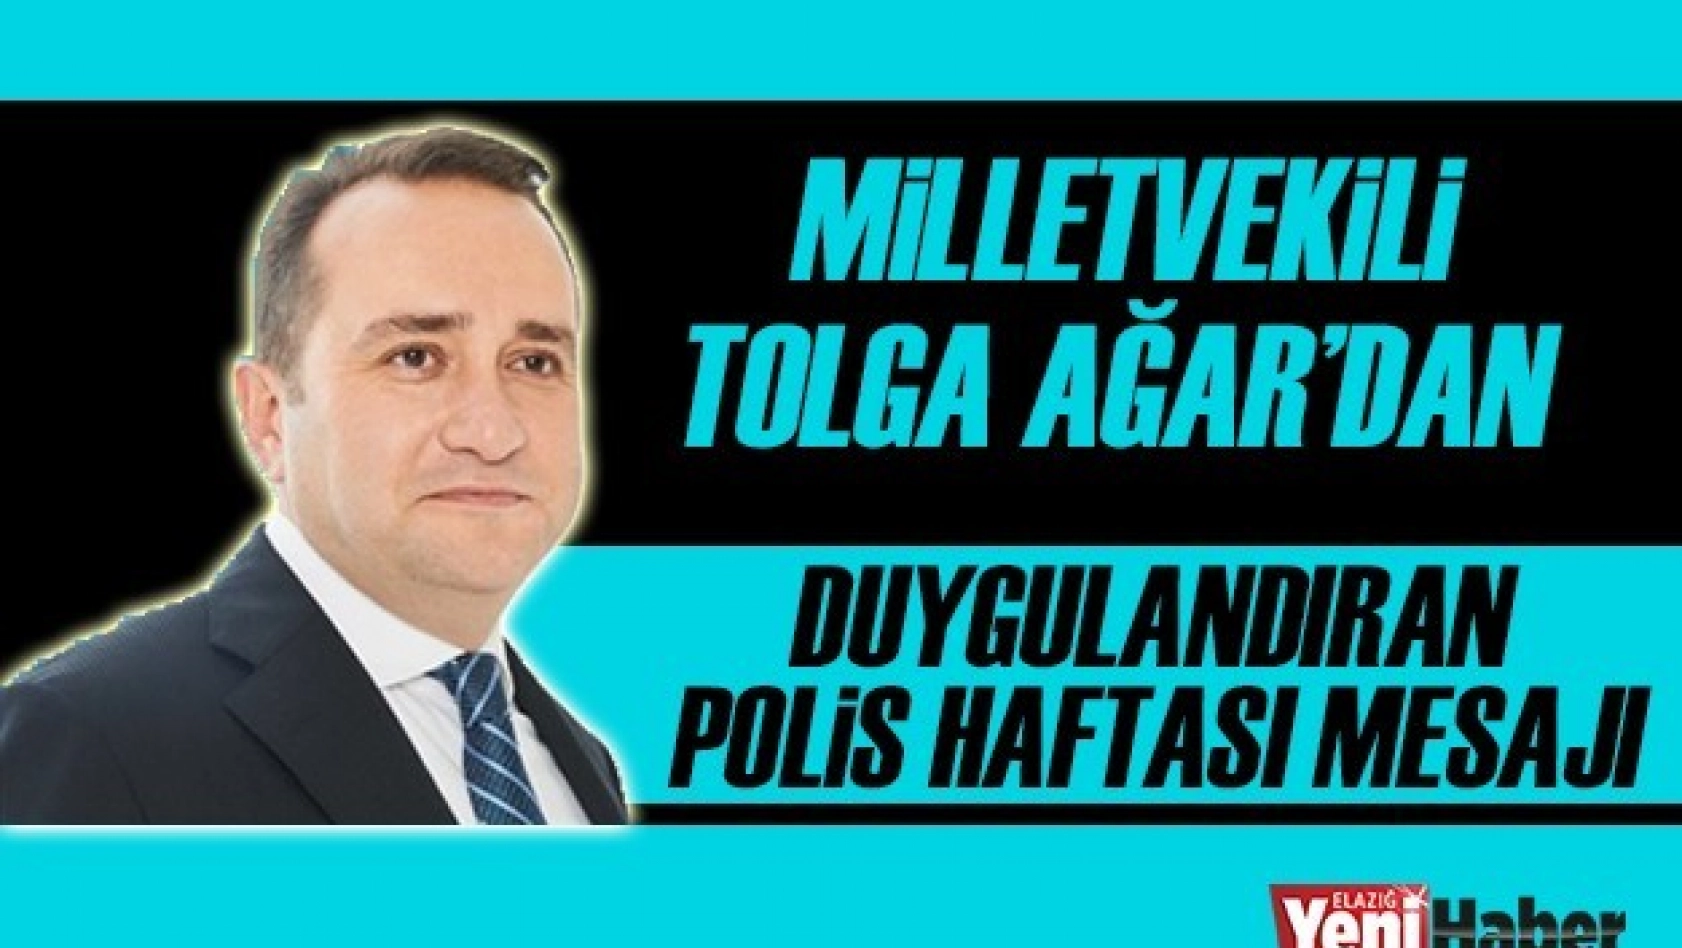 Milletvekili Ağar'dan Duygulandıran Polis Haftası Mesajı